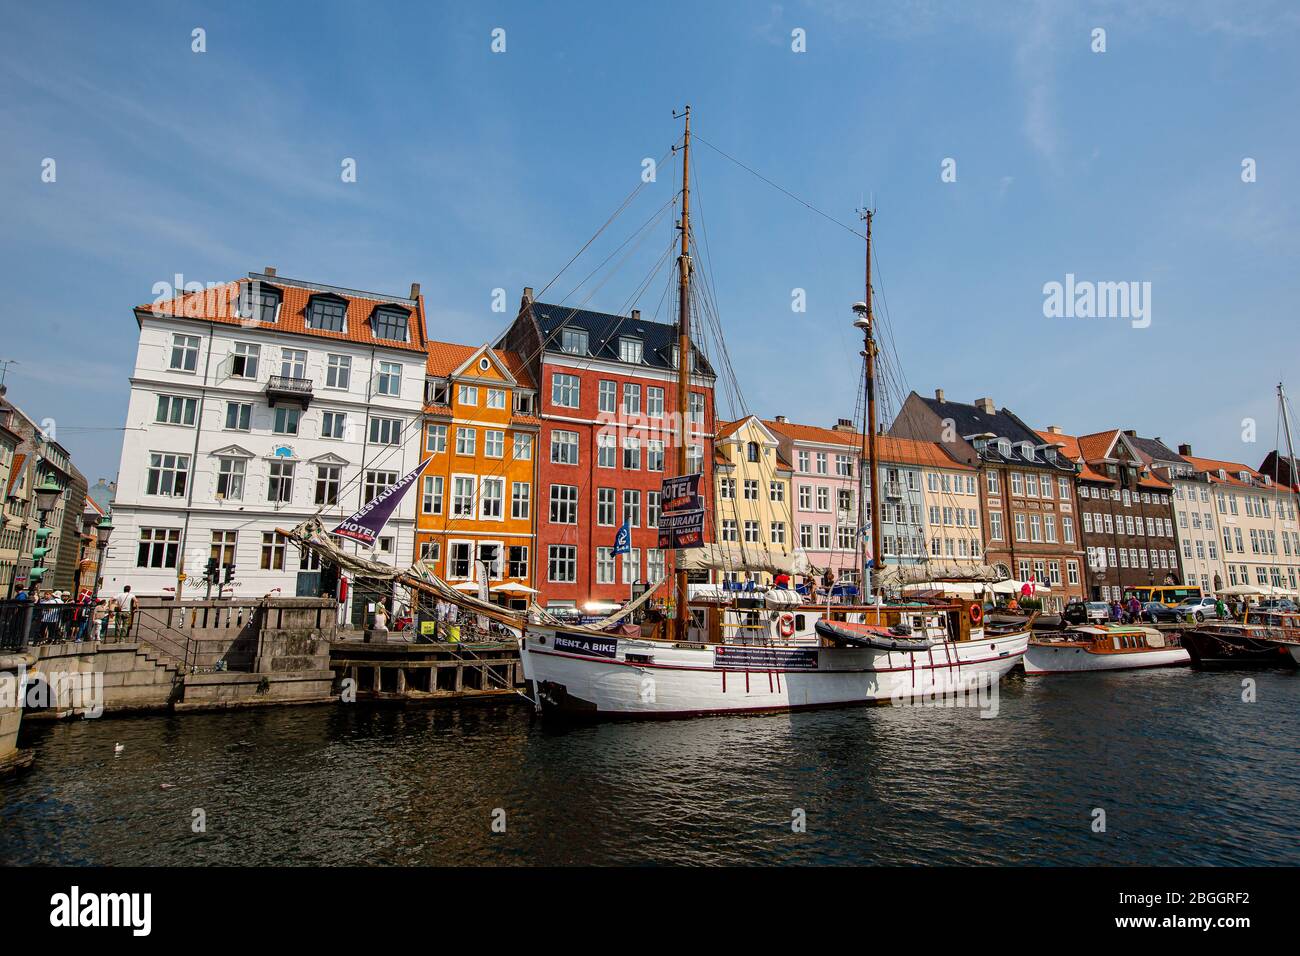 Nyhavn canal in Copenhagen, Denmark. Daylight shot Stock Photo